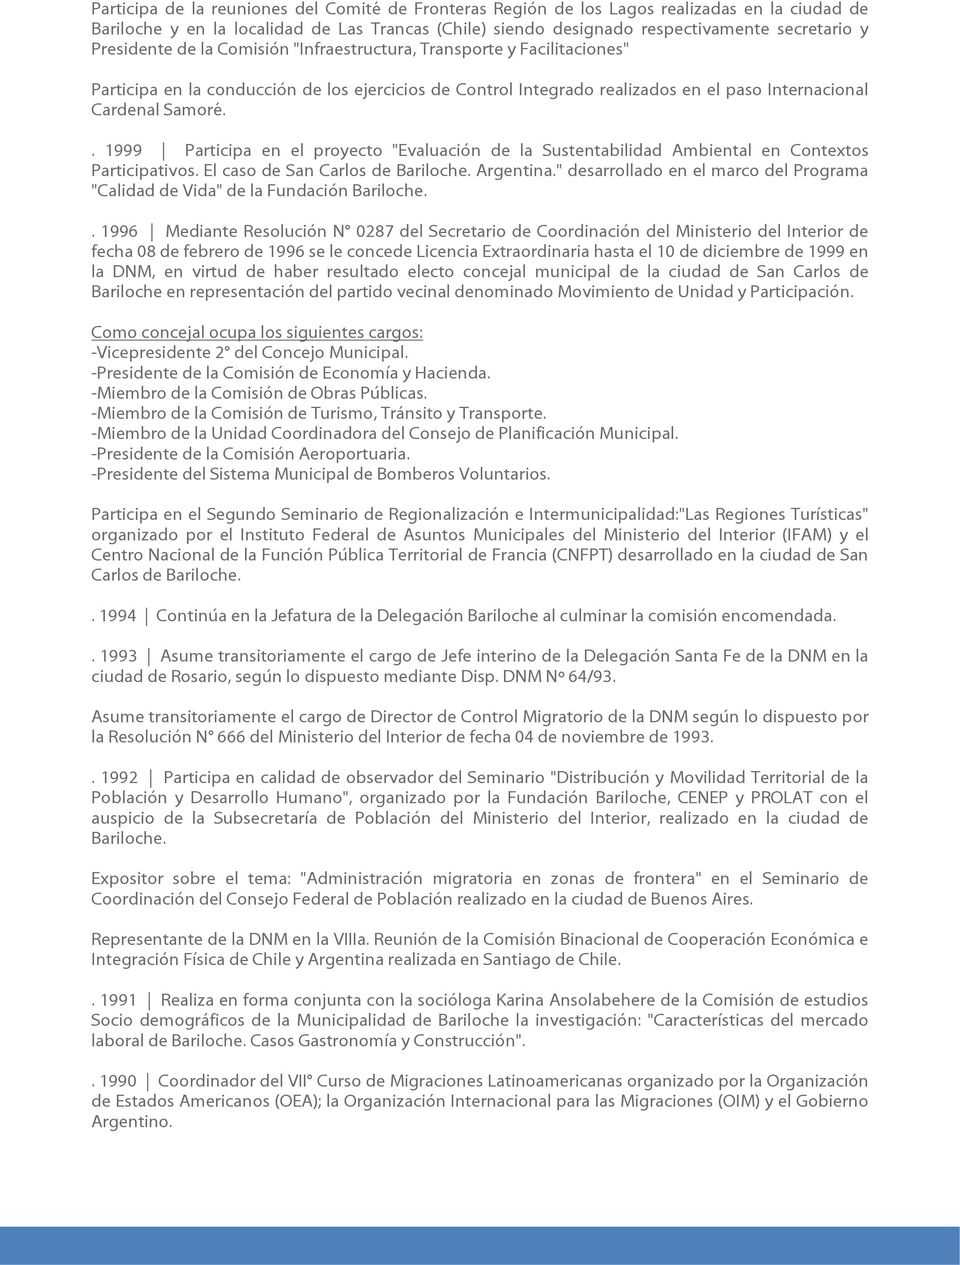 . 1999 Participa en el proyecto "Evaluación de la Sustentabilidad Ambiental en Contextos Participativos. El caso de San Carlos de Bariloche. Argentina.